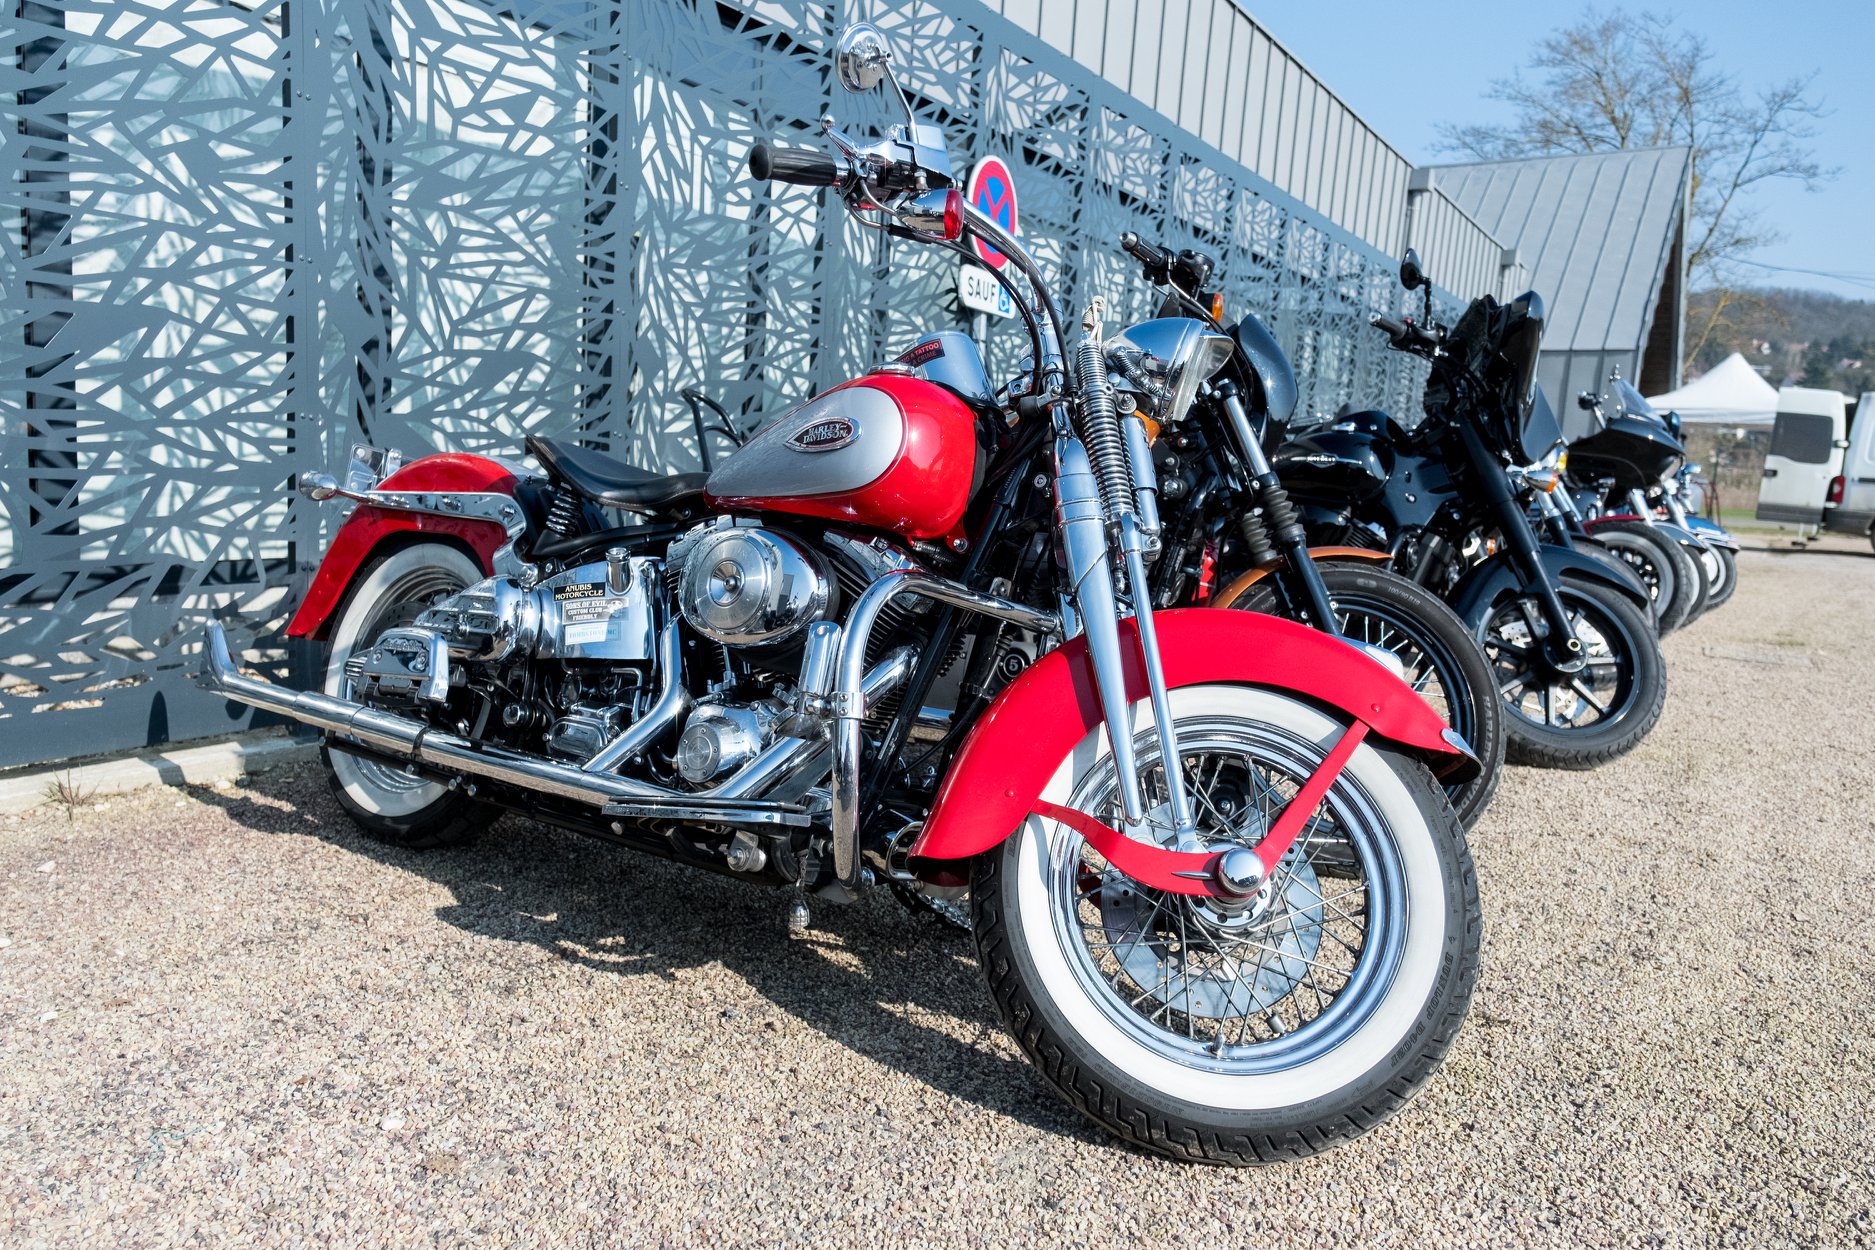 Exposition de motos dfe collection et customisées, dont la célèbre Harley Davidson  - illustration © West Motors Night / Facebook